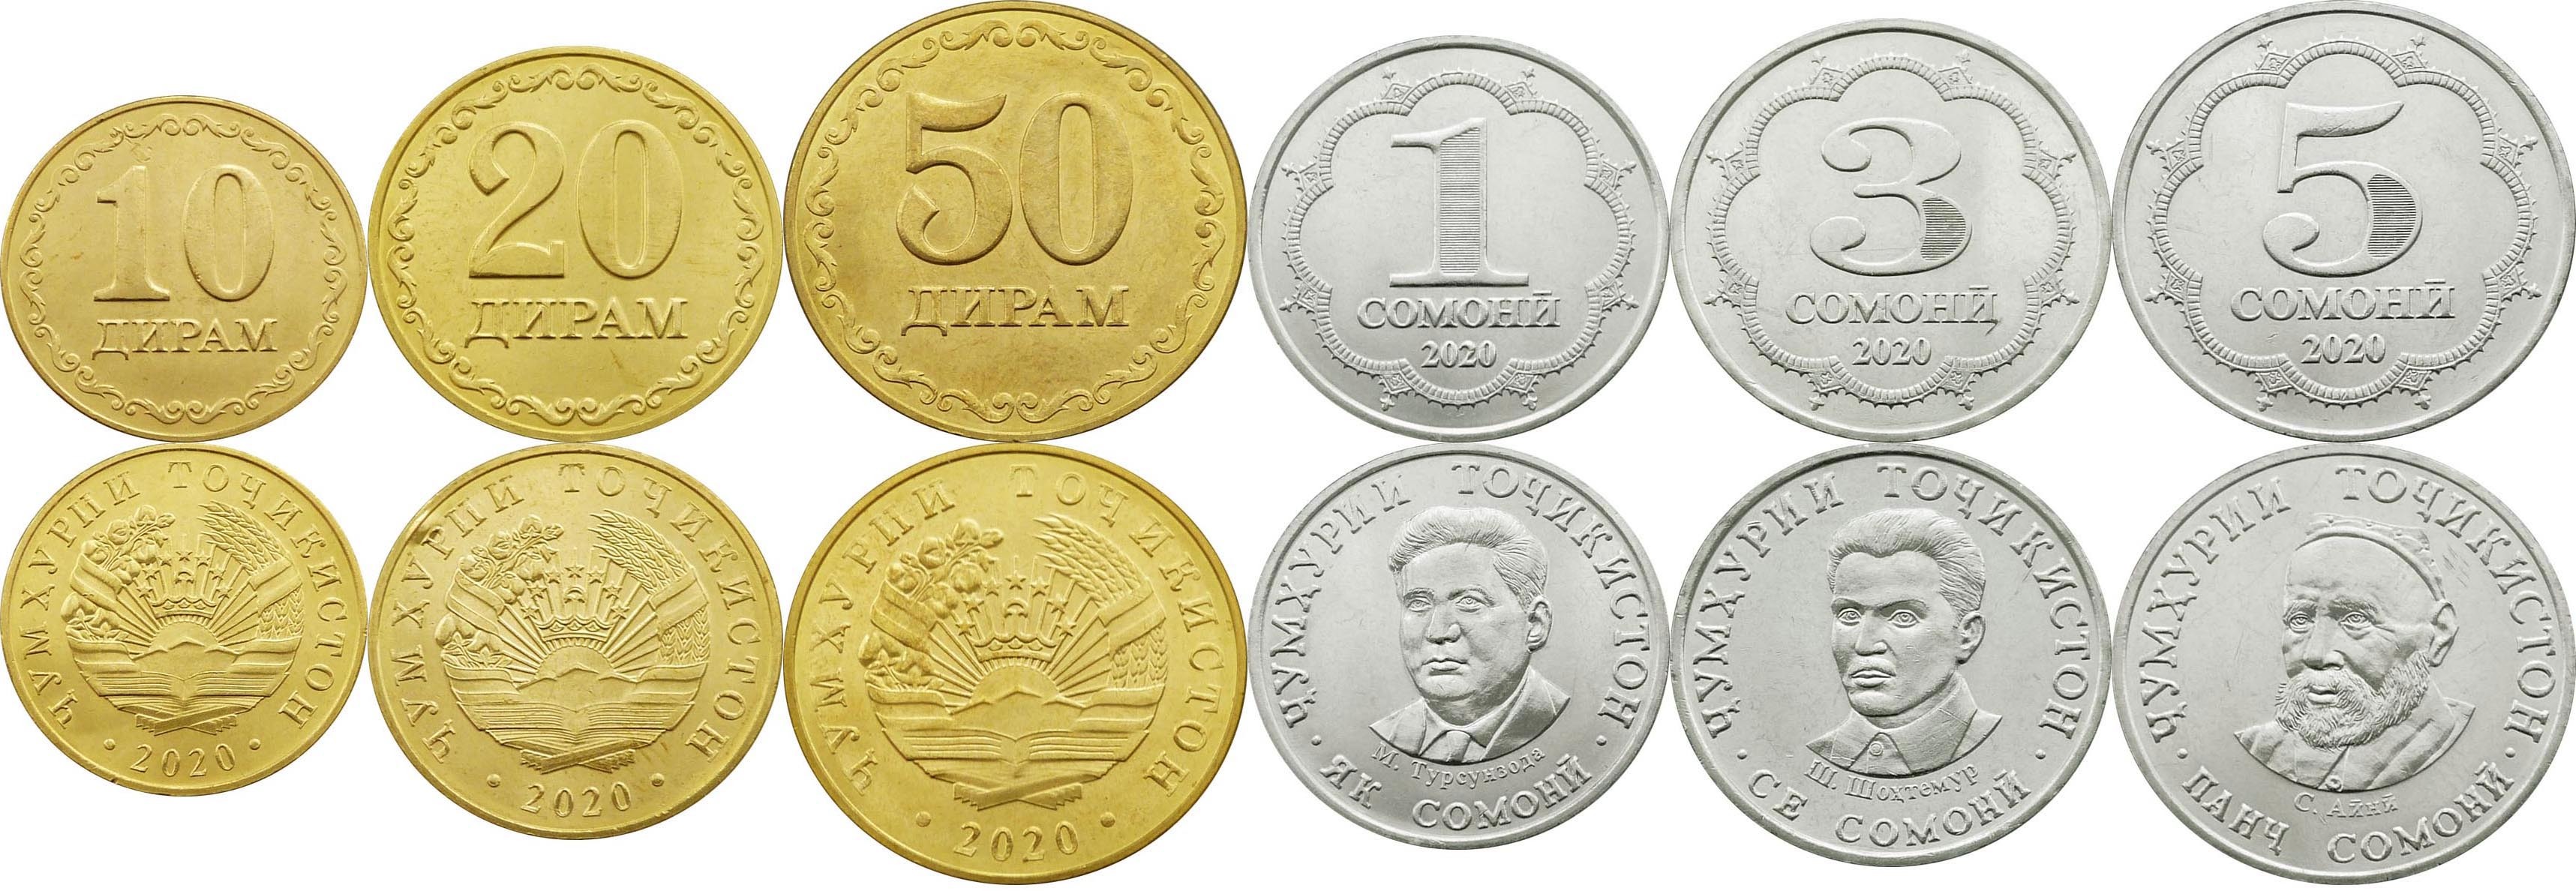 40000 рублей в сомони. 500 Сомони танга монета. 10 Сомон 20 дирам. Сомони 50 дирам. Монета 20 дирам.